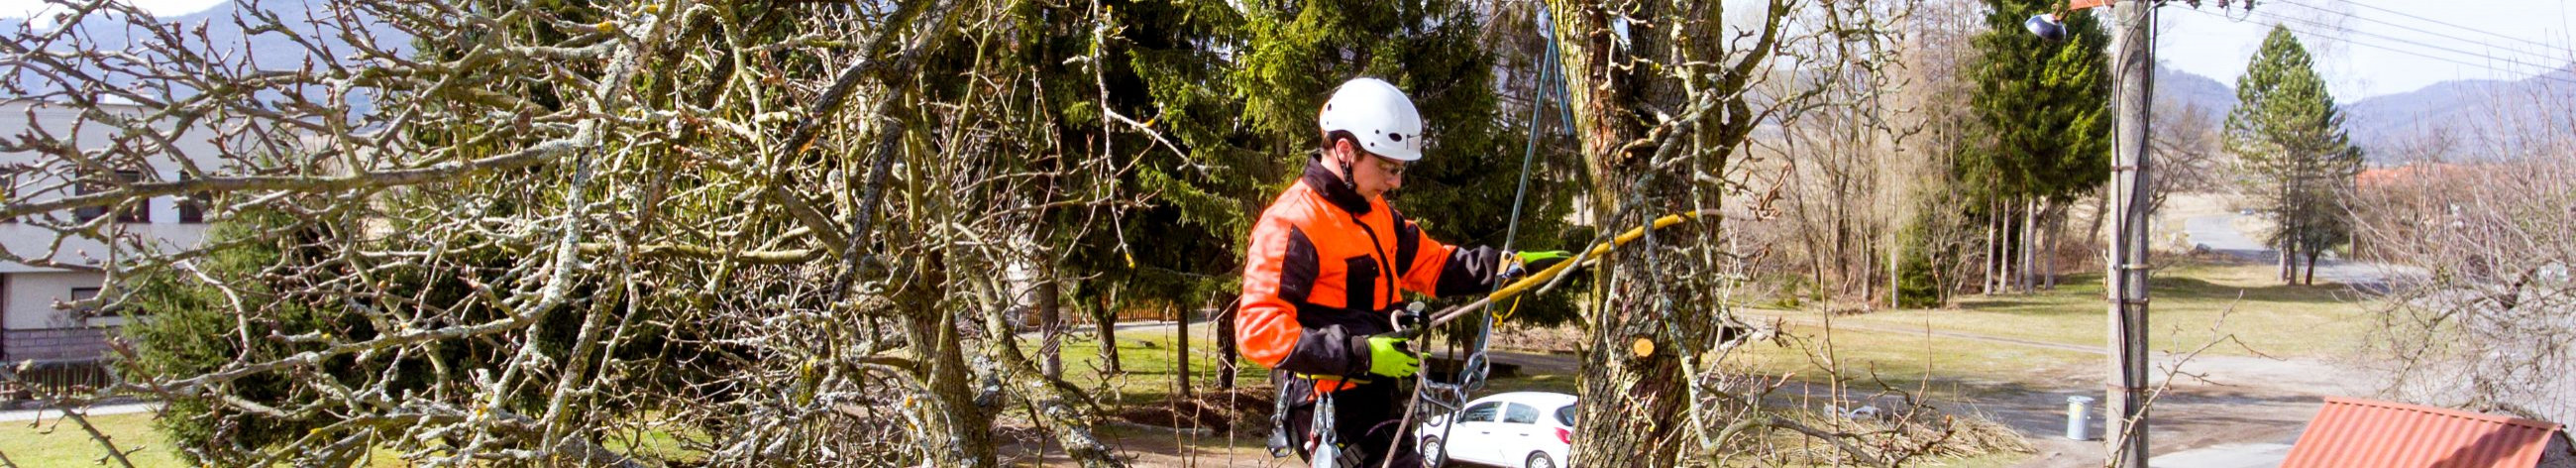 Stonewey OÜ on arboristiteenuseid pakkuv ettevõte, mille põhiliseks kireks on ohtlike puude langetus ja hoolduslõikused.